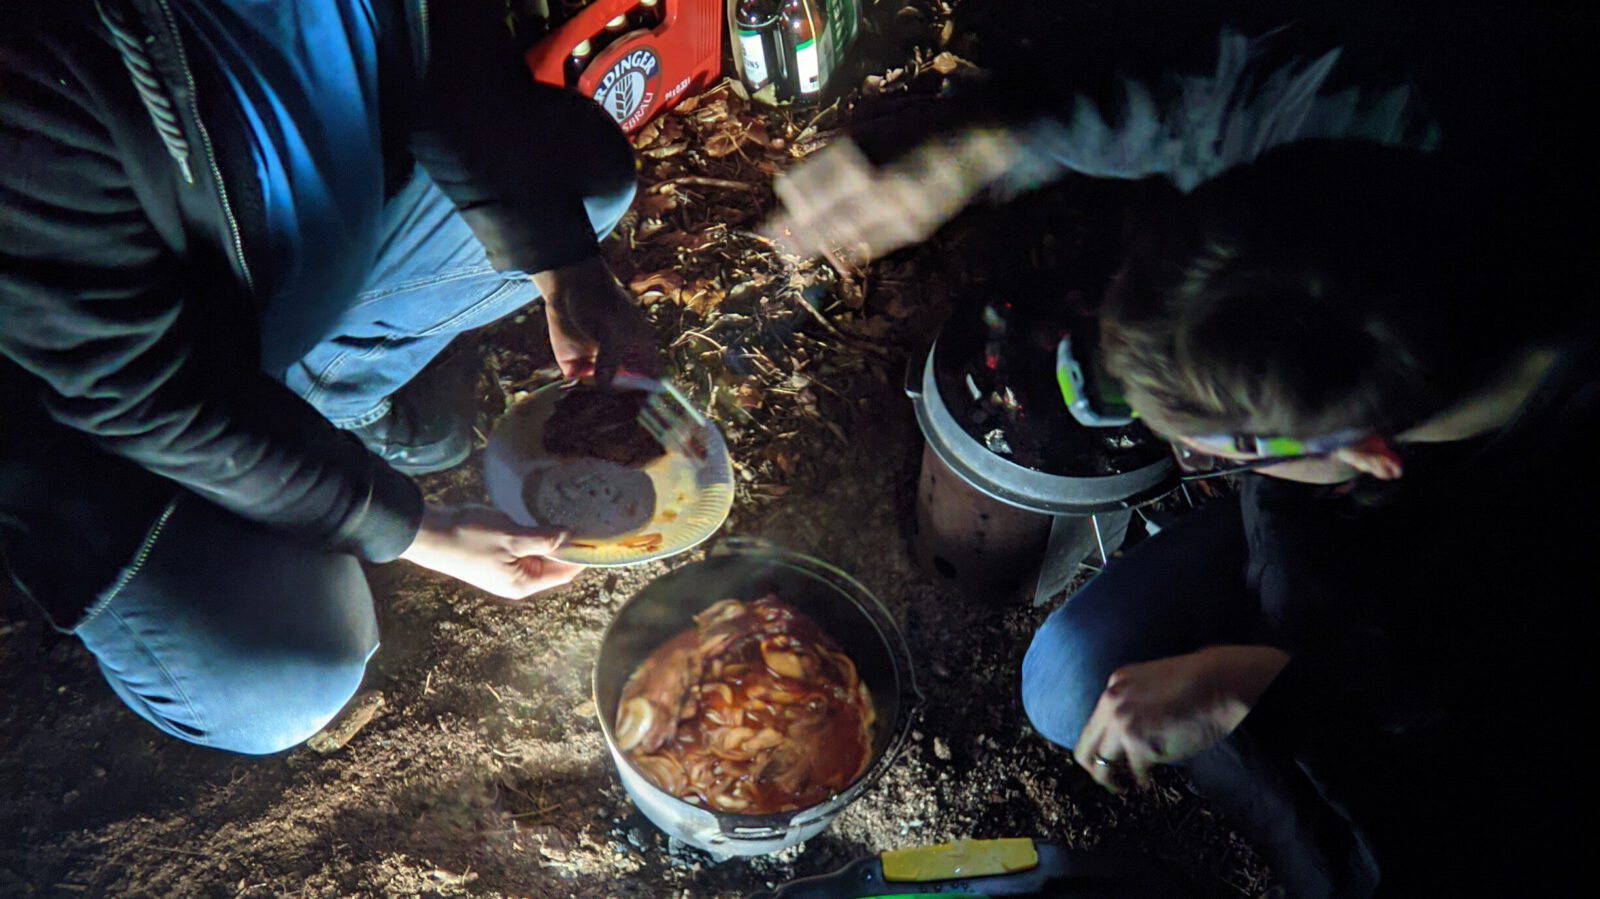 alt=“Zwei Menschen sitzen in dunklem Wald nehmen sich essen aus dem Dutchoven″